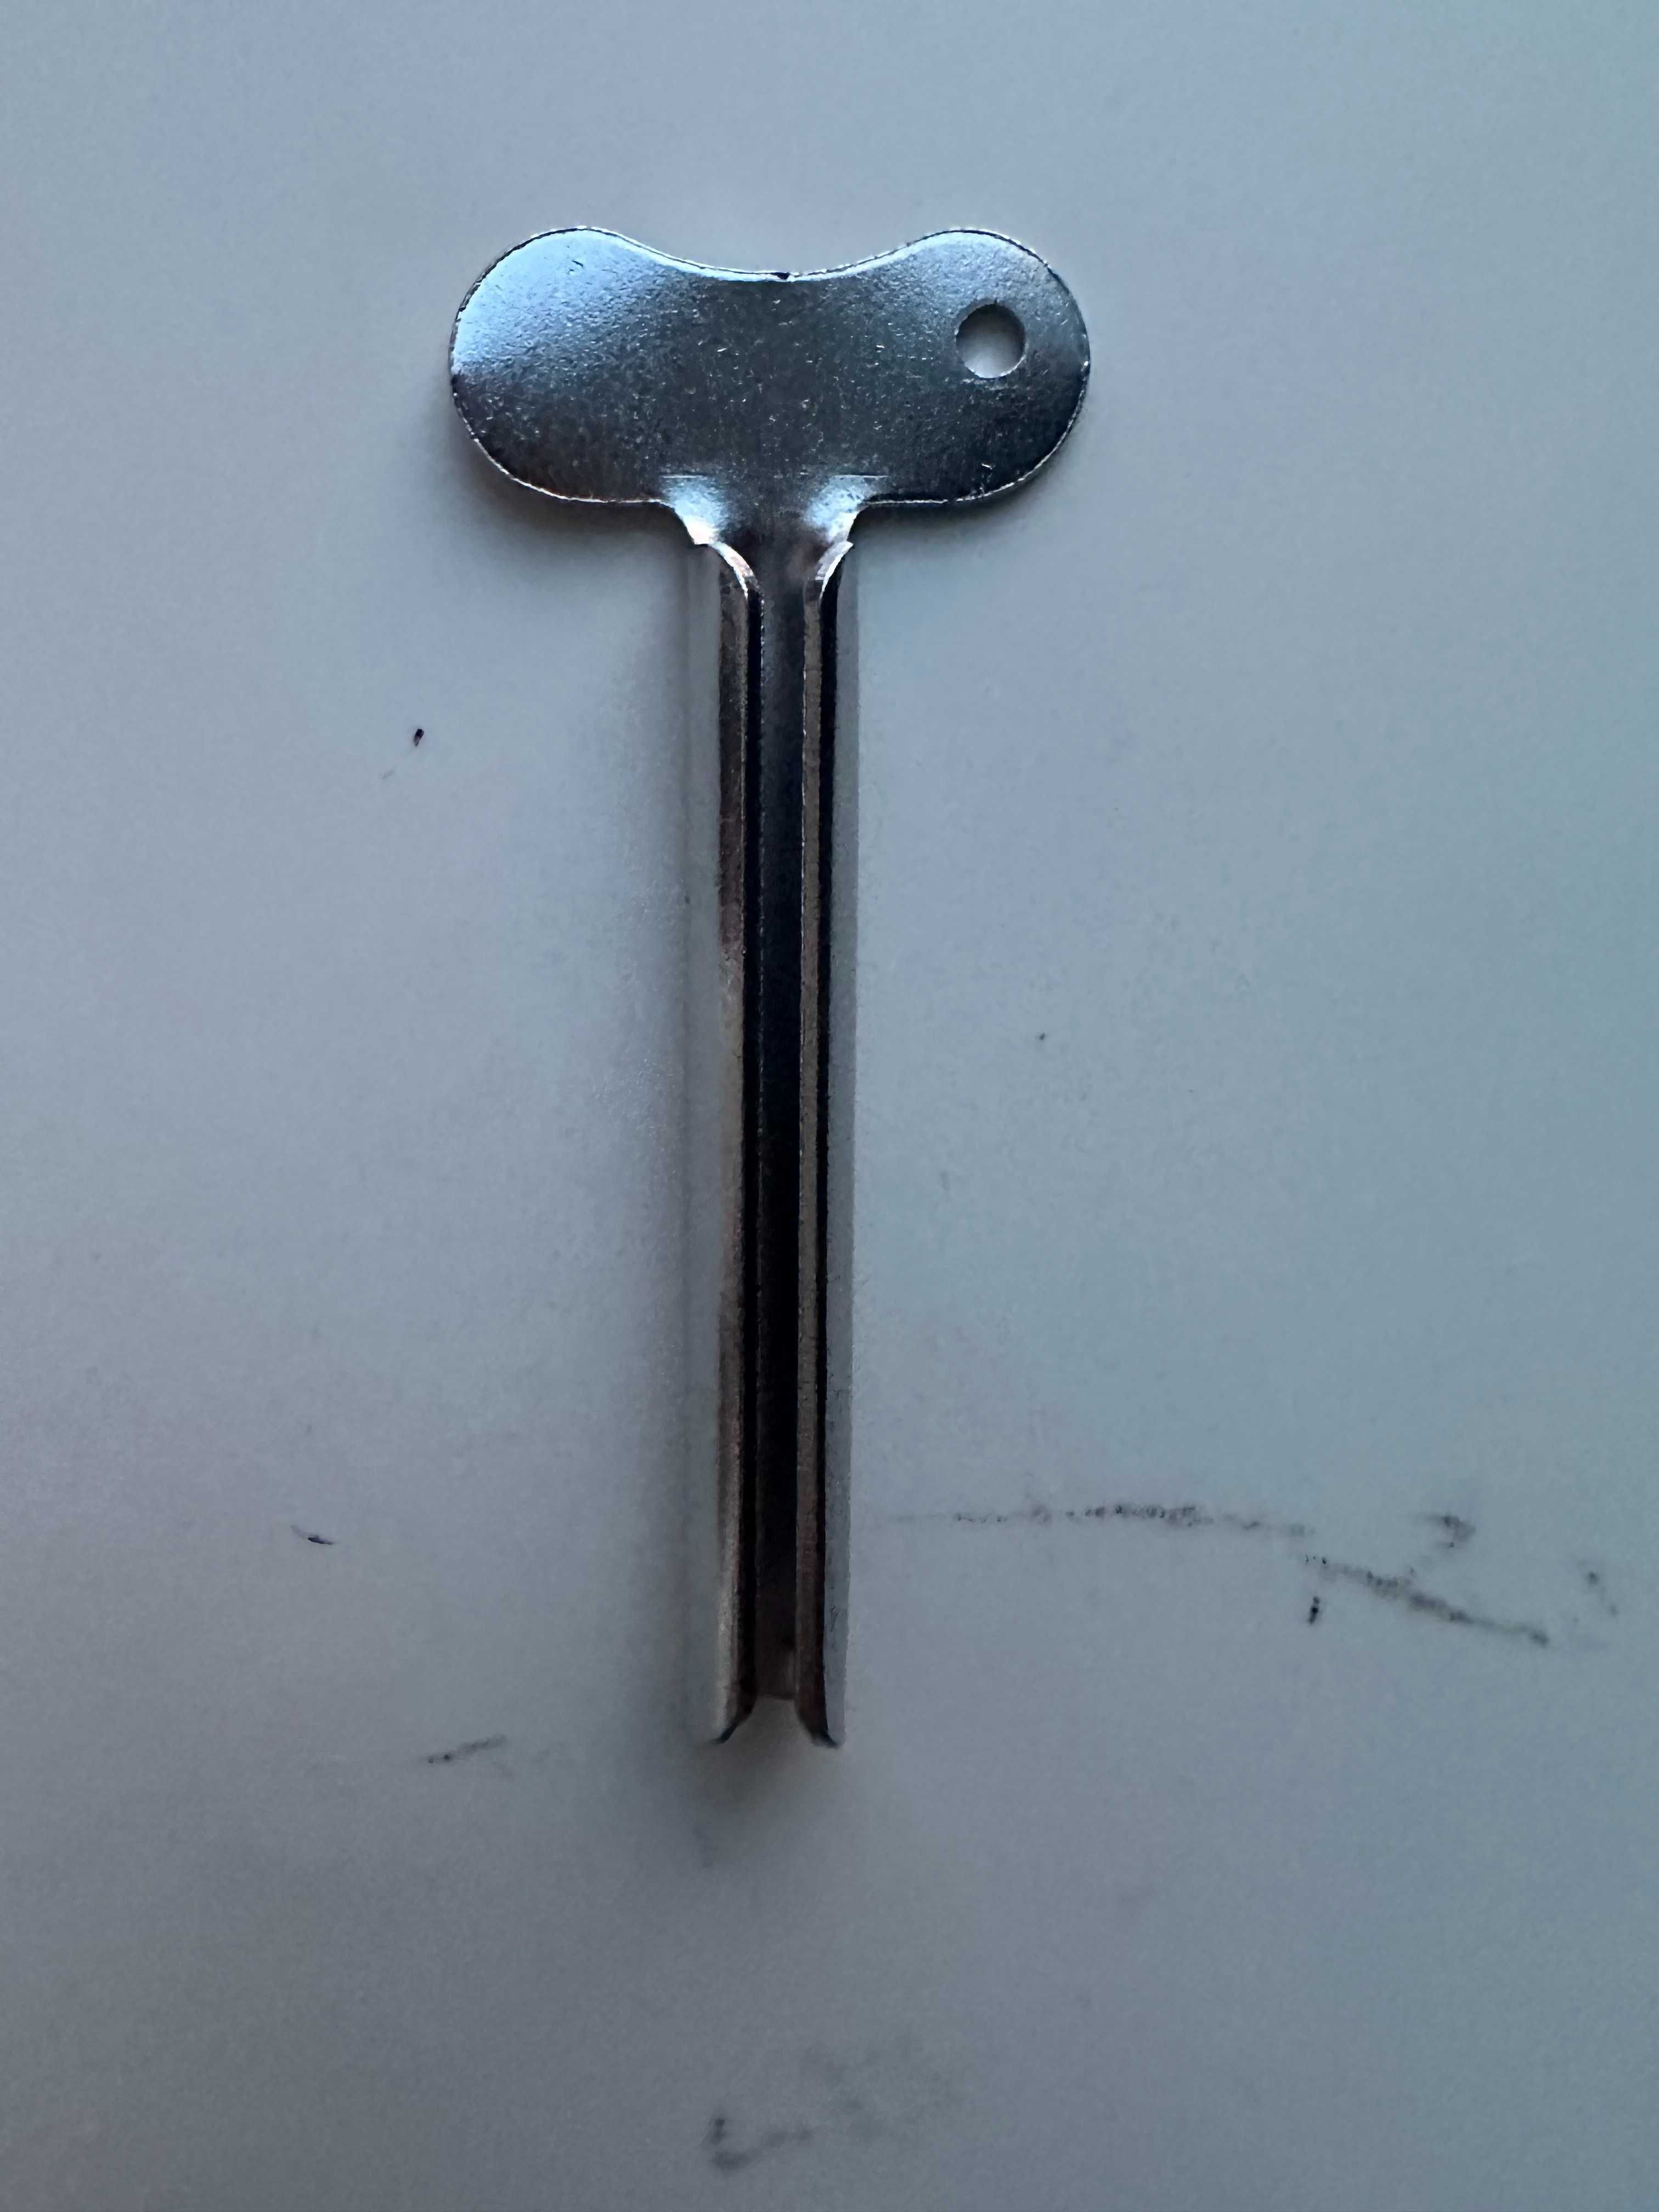 Desiree wyciskarka kluczyk klucz miseczka do farb fryzjerskich srebrna